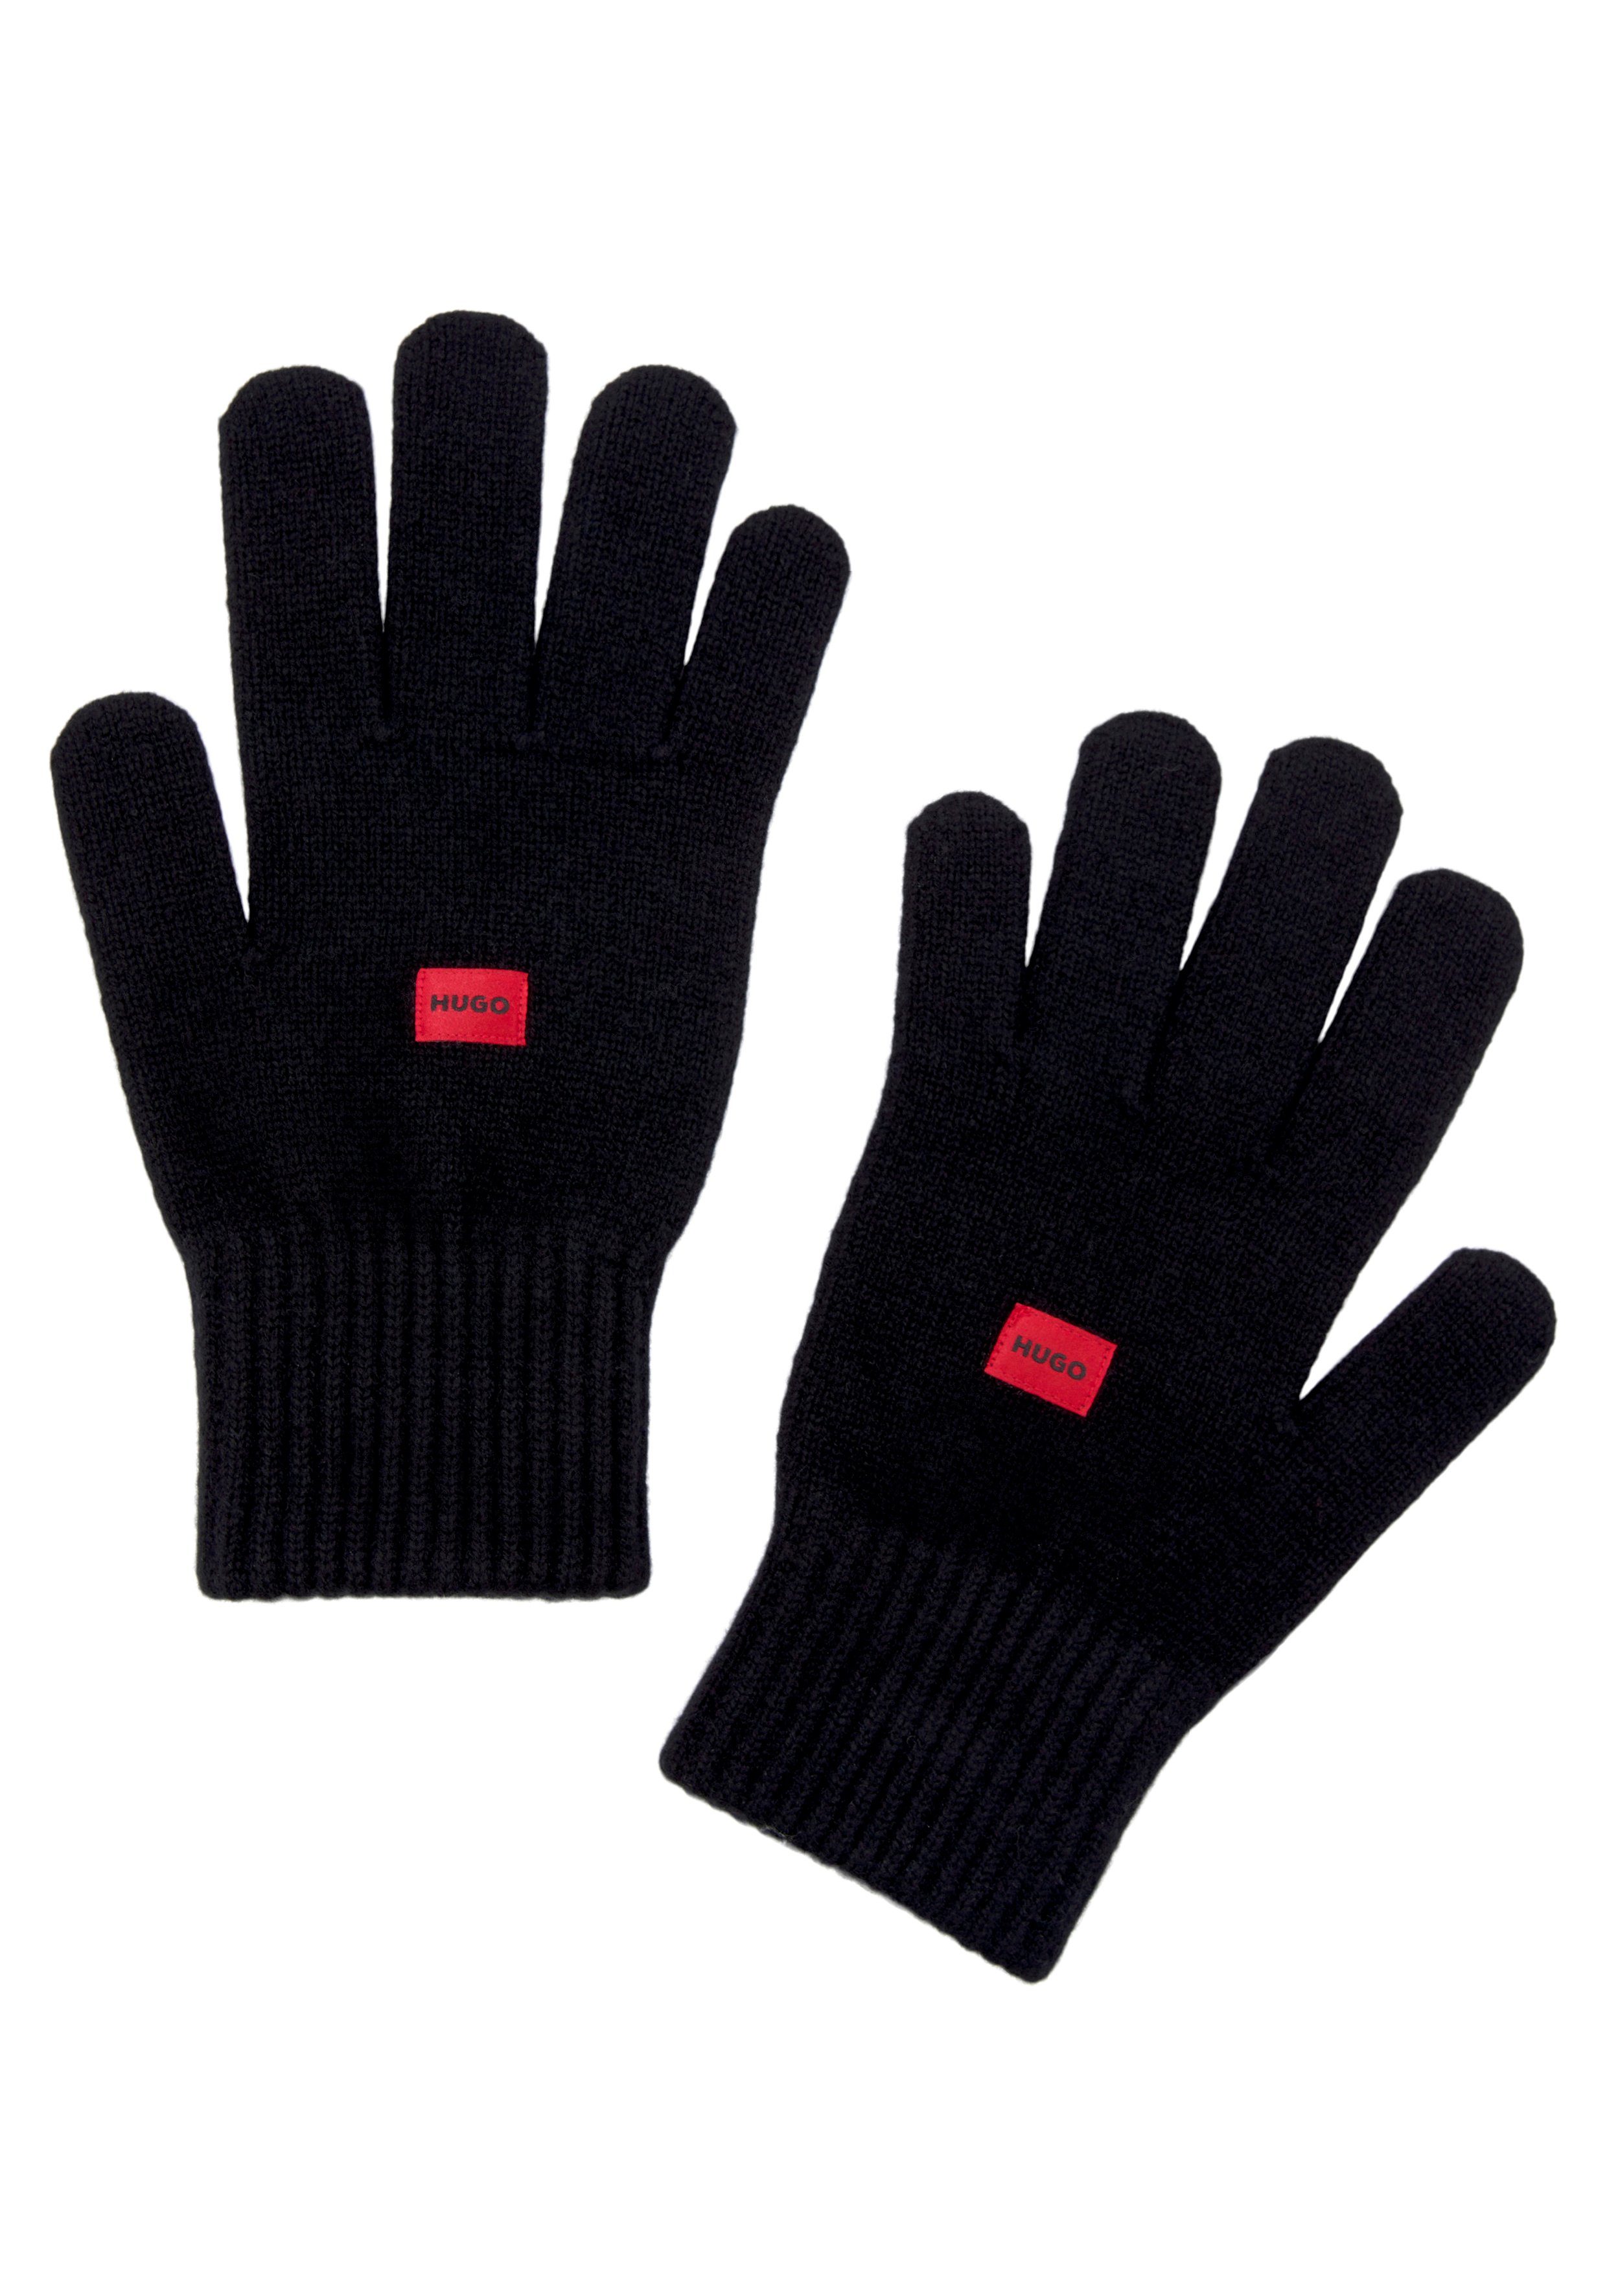 HUGO Strickhandschuhe Waff 3 mit kontrastfarbenem Markenlabel auf beiden Handrücken schwarz (15) | Wollhandschuhe